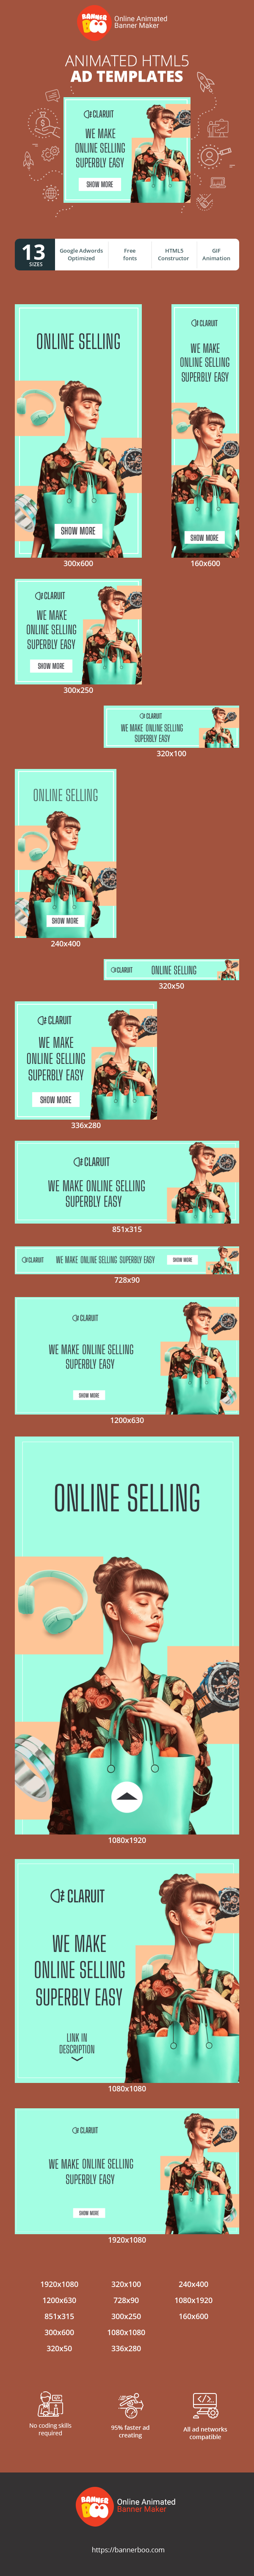 Шаблон рекламного банера — We Make Online Selling Superbly Easy — E-Commerce